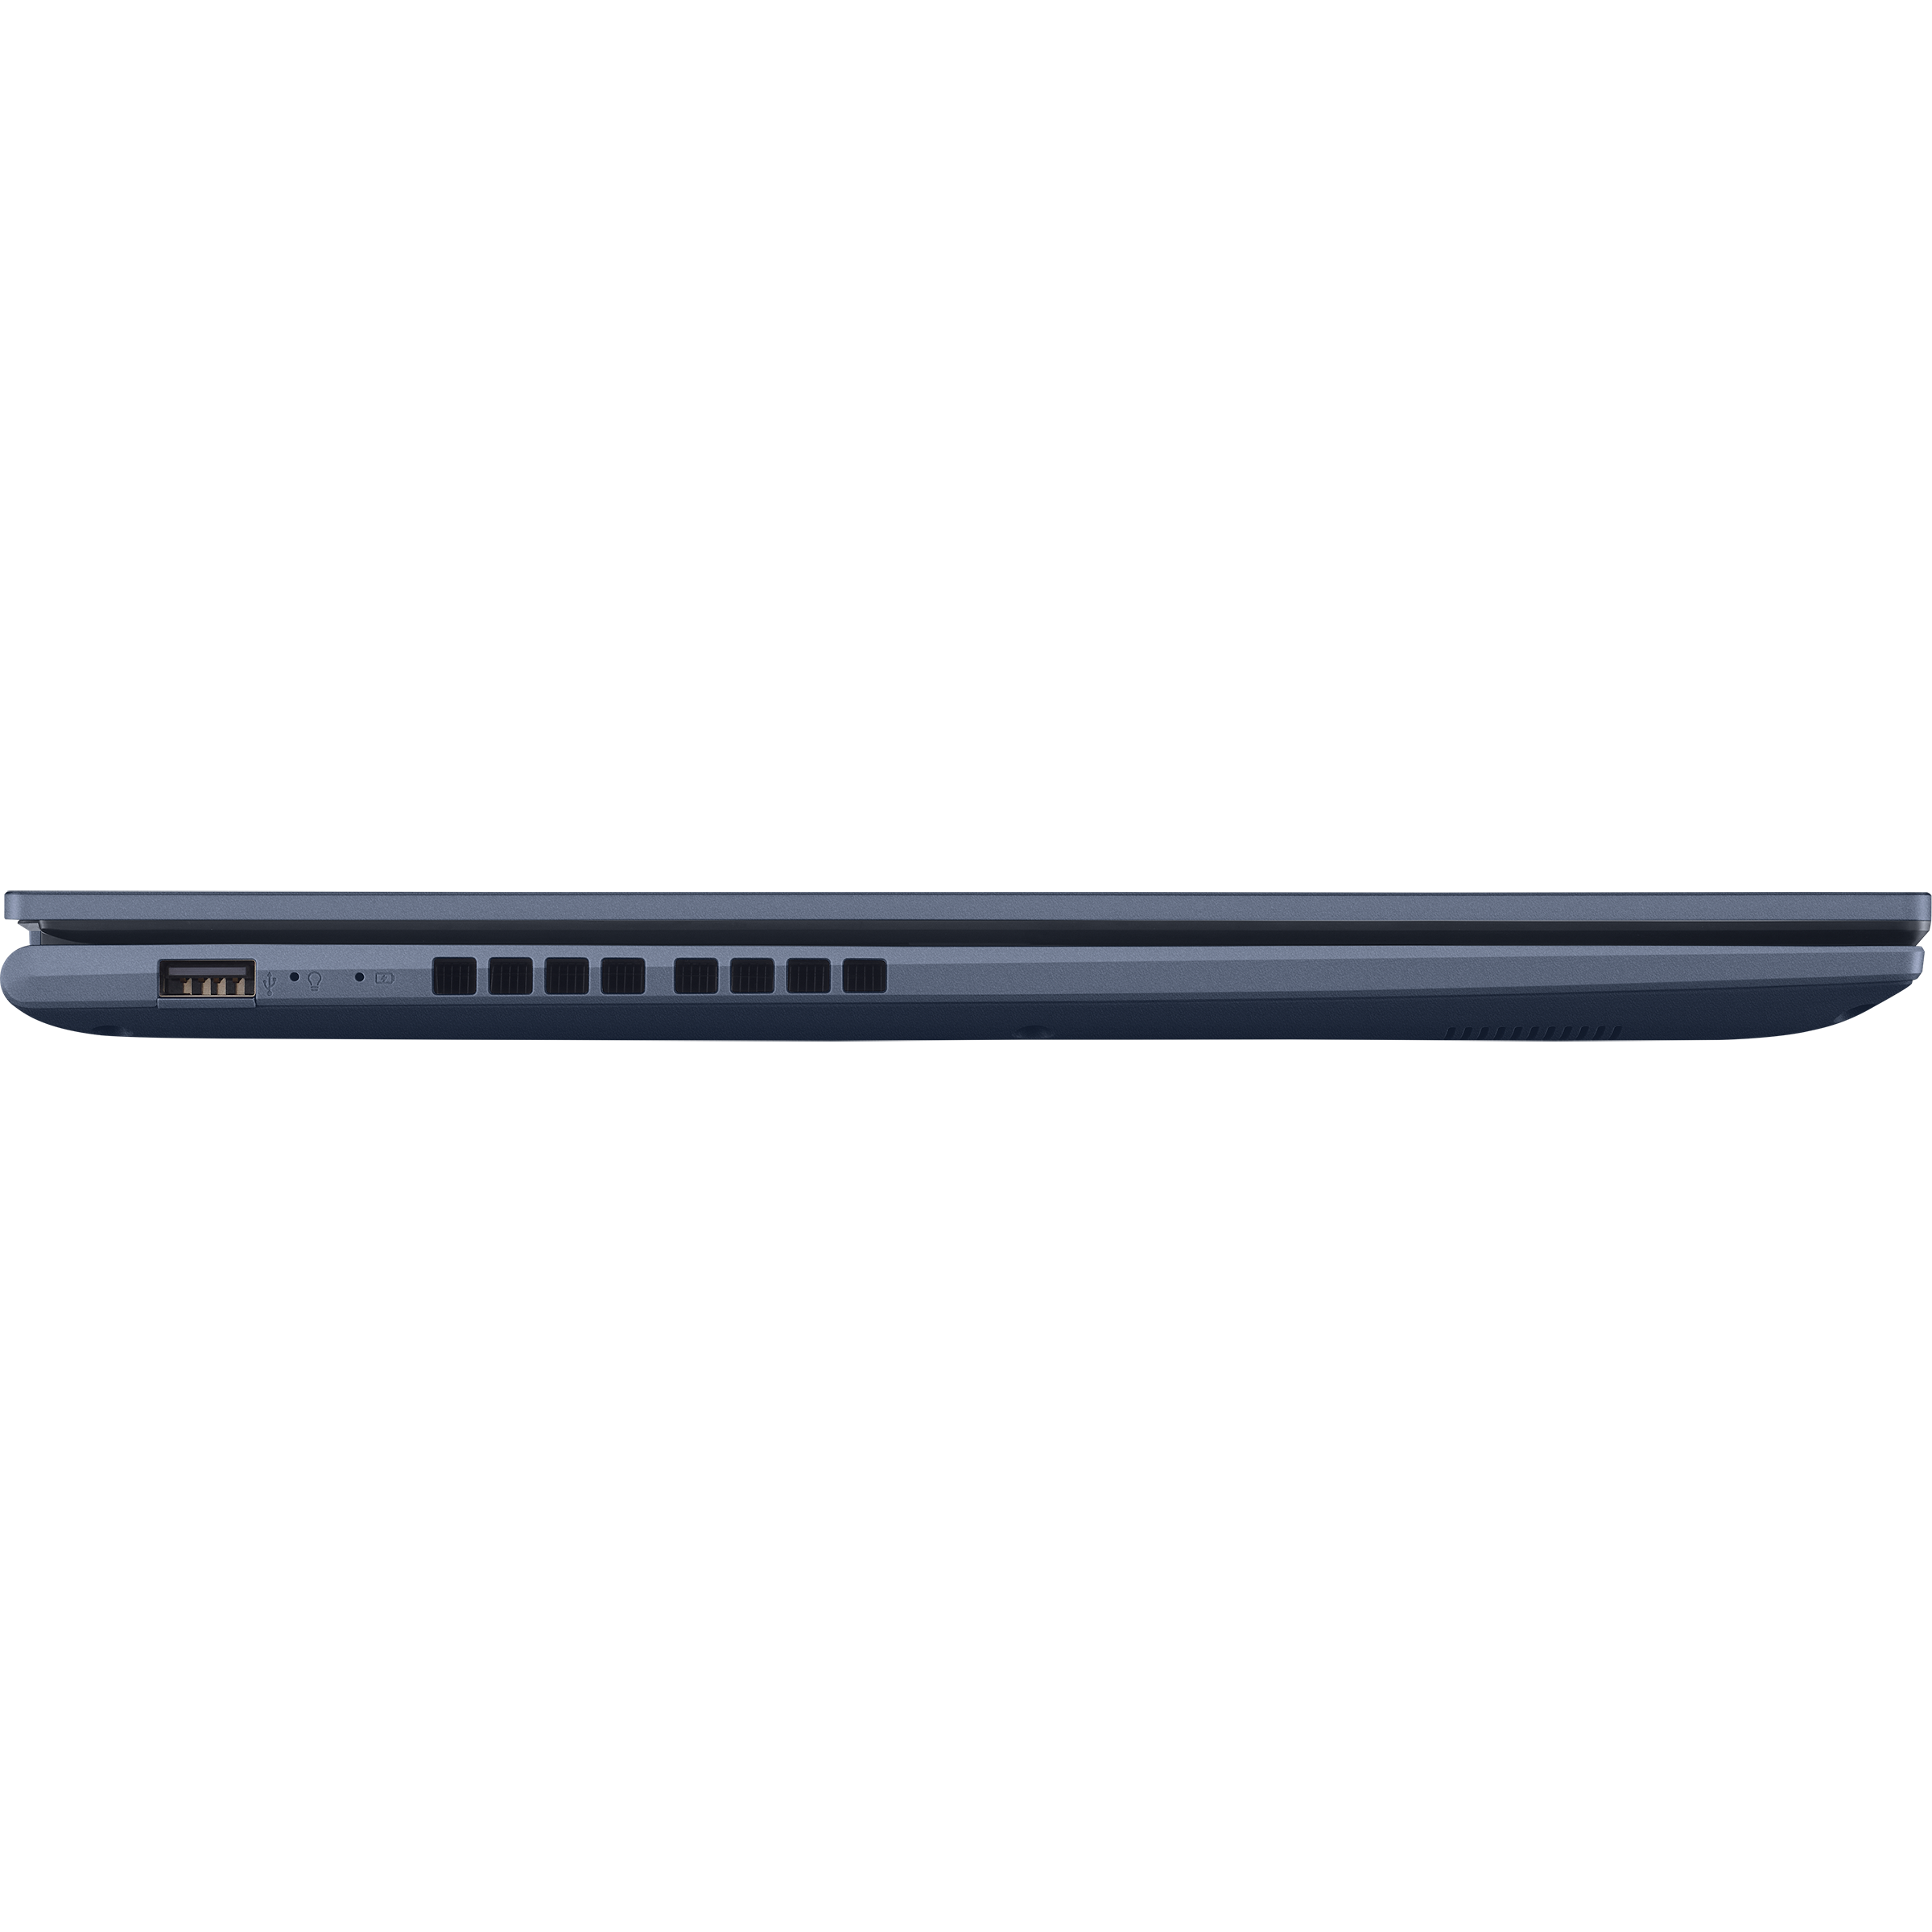 Vivobook 17 (M1702, AMD Ryzen series)｜Laptops 5000 For Global Home｜ASUS